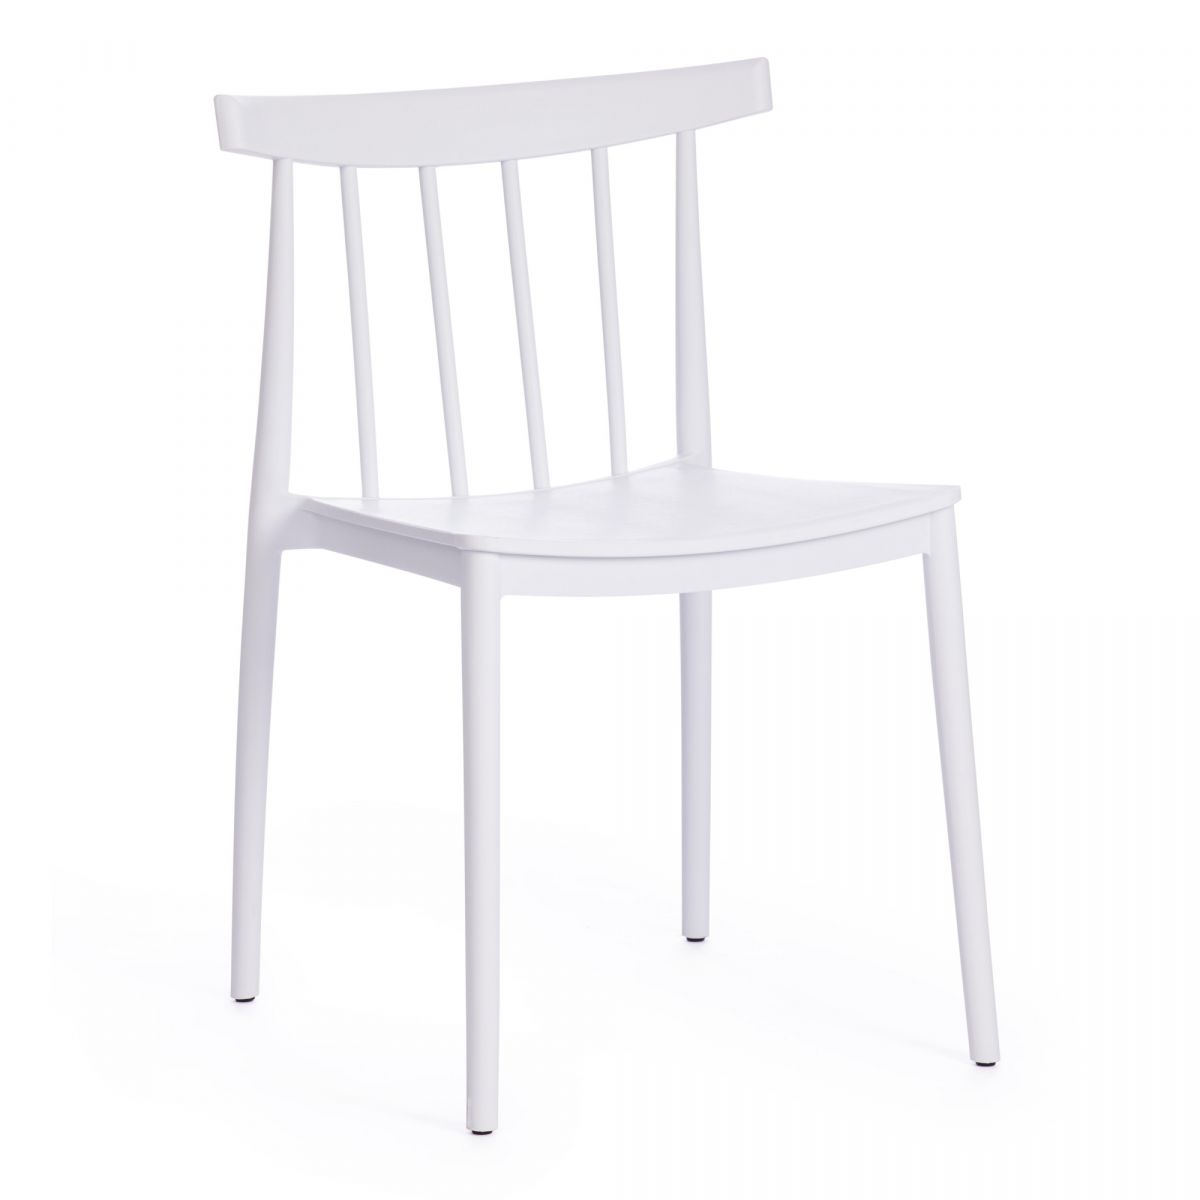 Легкий, компактный пластиковый стул в современном стиле модерн белого цвета